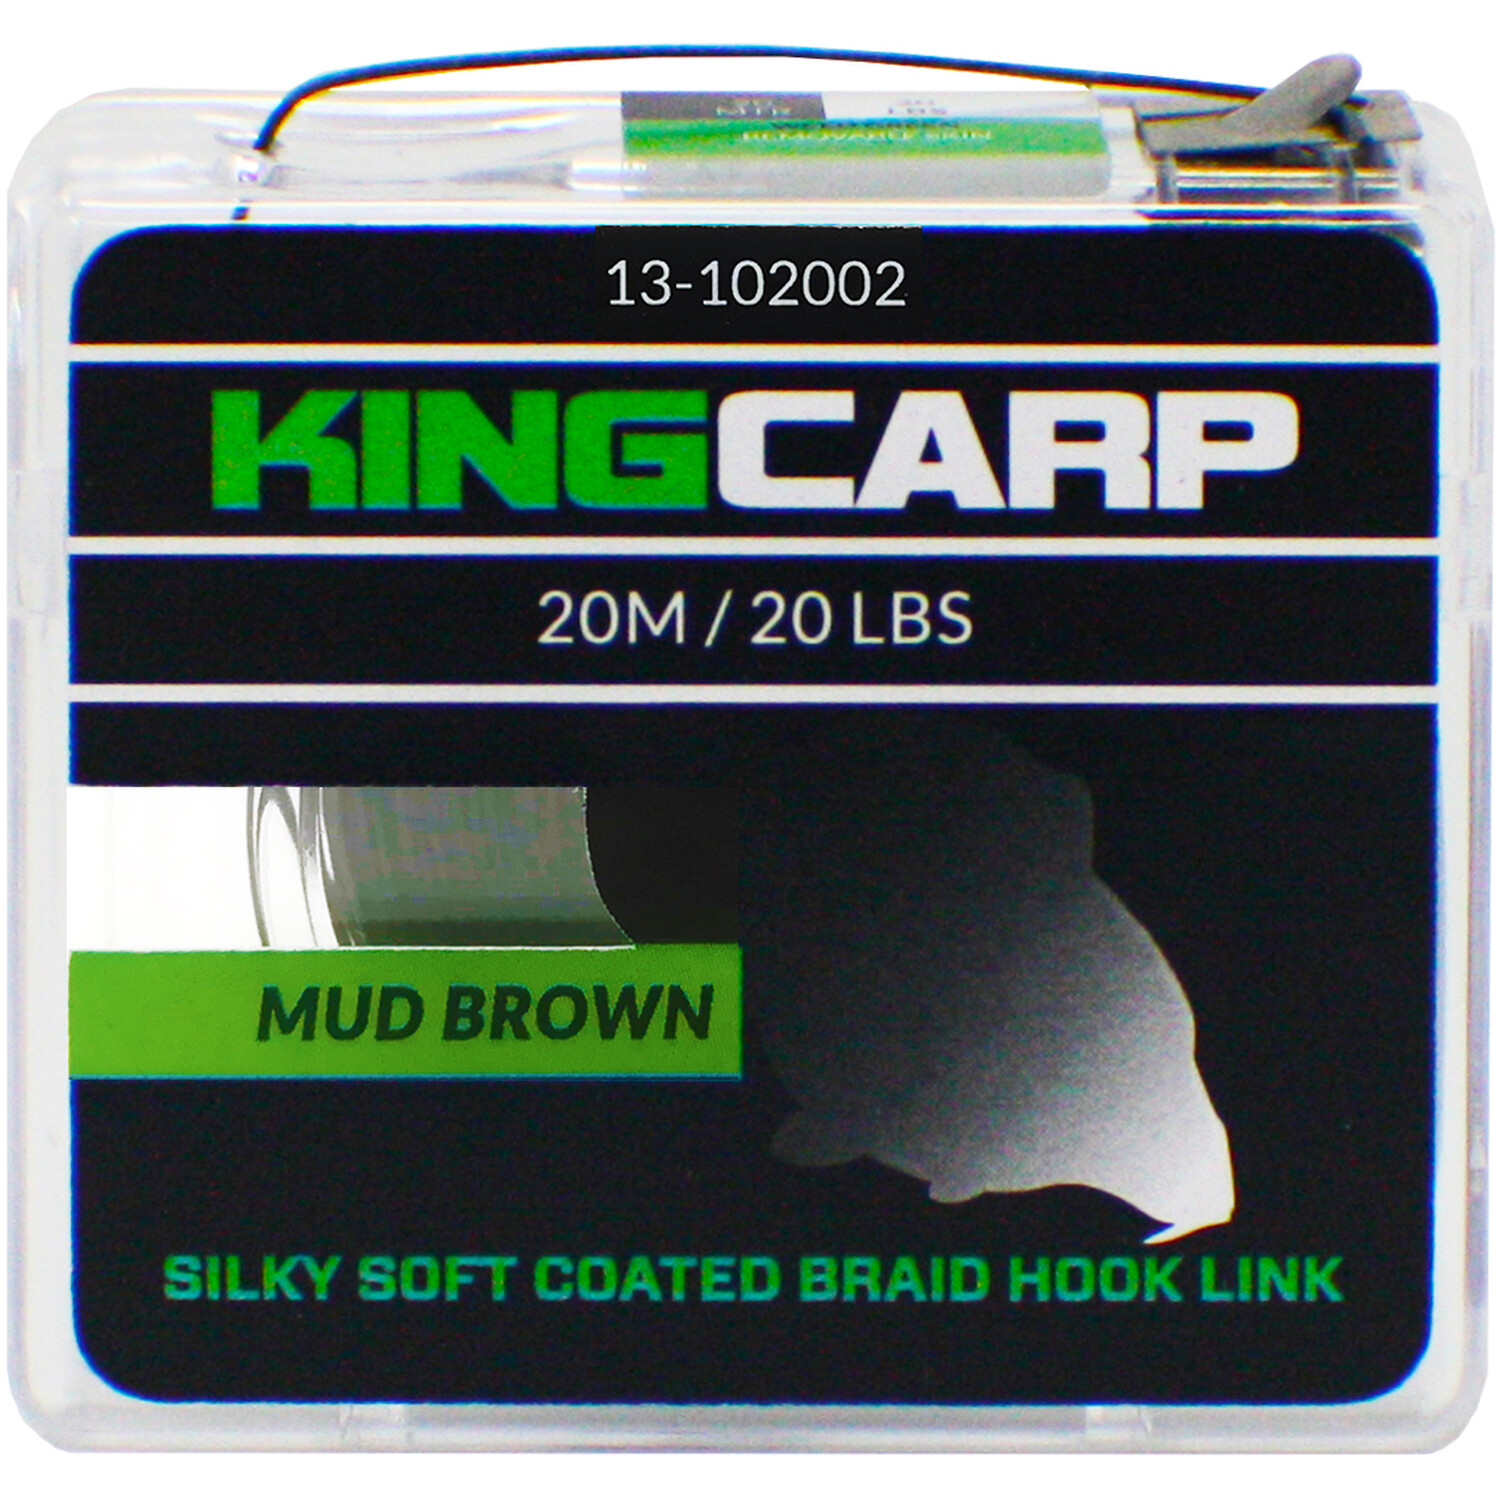 Mud Brown King Carp Coated Braid Hook Link Image 1